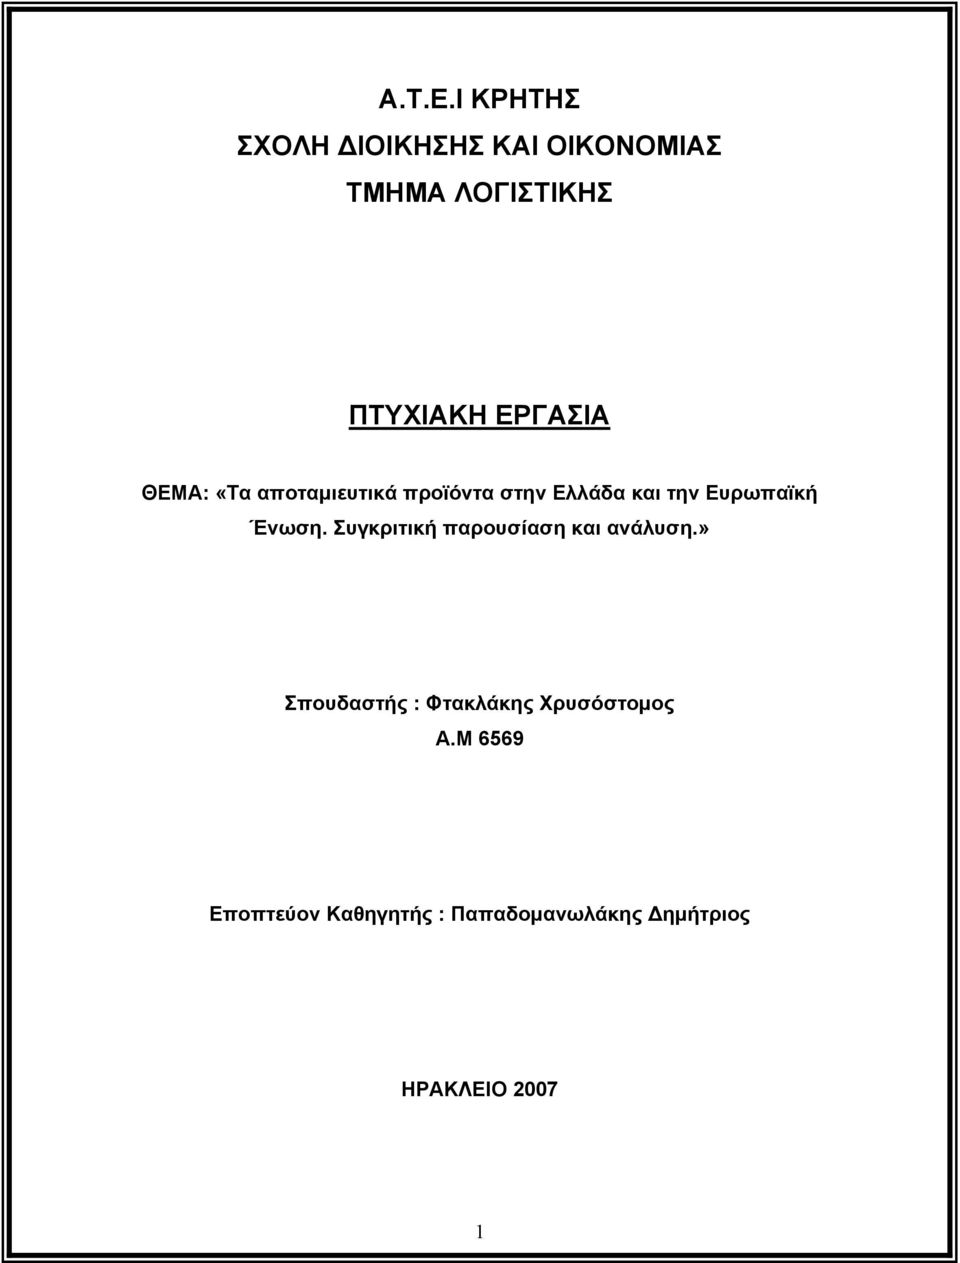 ΘΕΜΑ: «Τα αποταμιευτικά προϊόντα στην Ελλάδα και την Ευρωπαϊκή Ένωση.